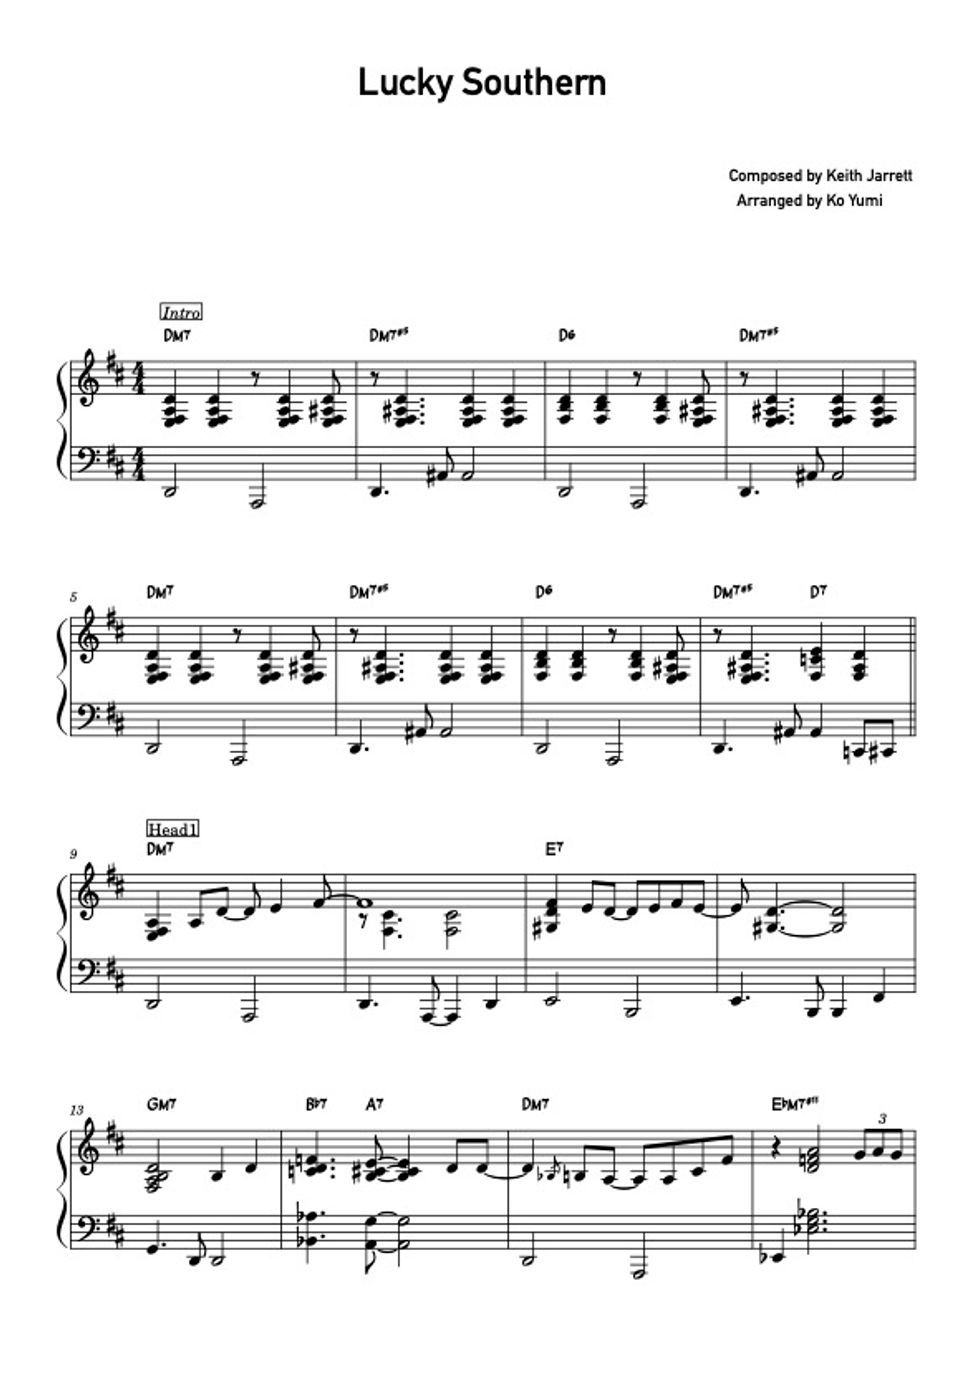 Keith Jarrett - Lucky Southern (Bossa Nova Solo Piano) by KoYumi Music